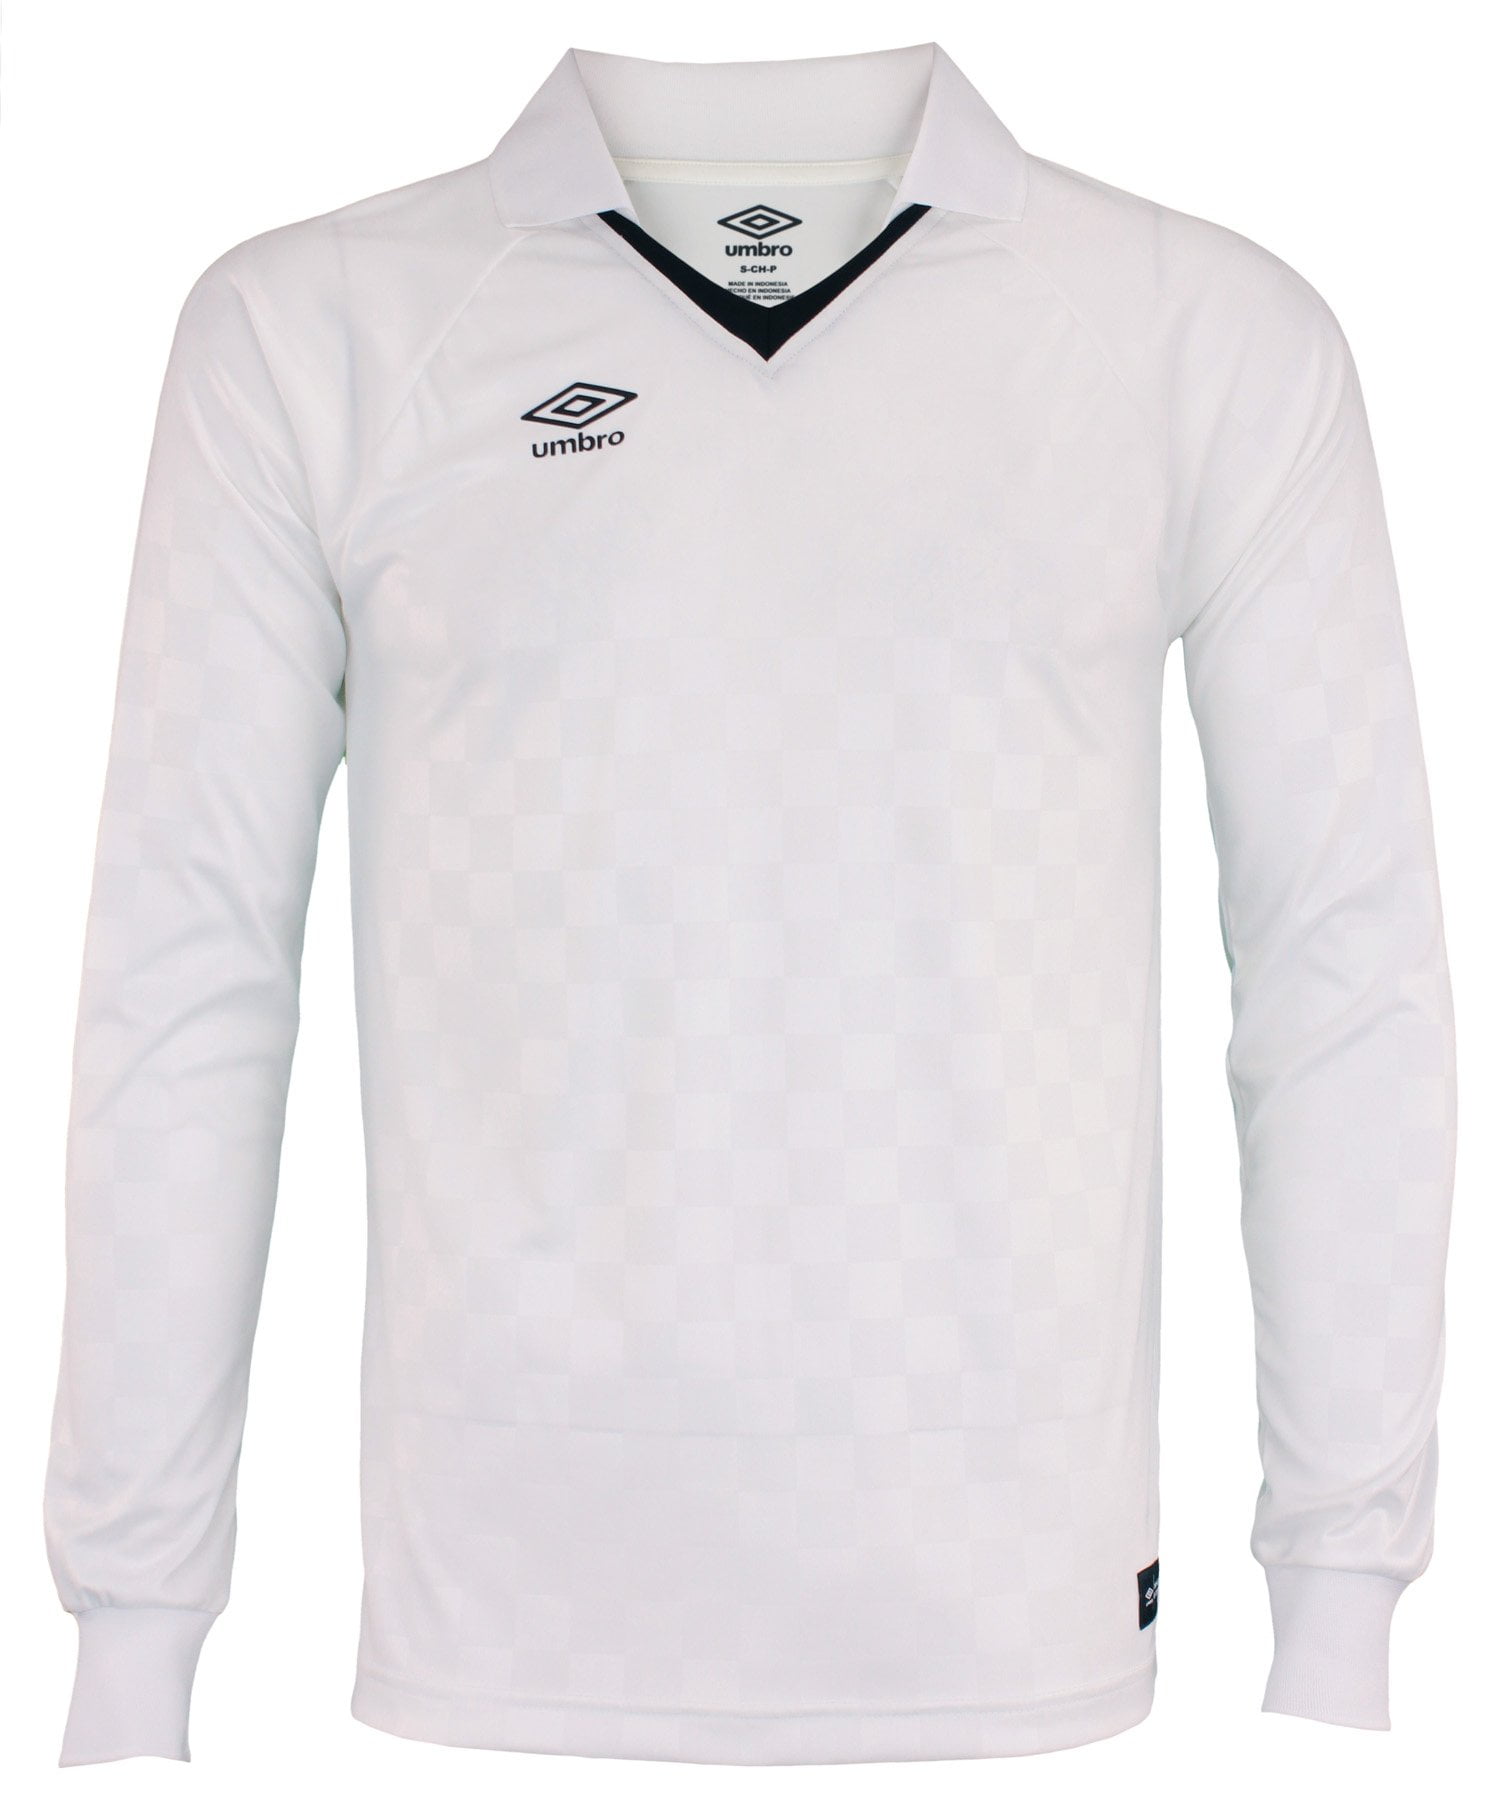 Umbro Men's V-Neck Short Sleeve Checkerboard Soccer Jersey Shirt Black/White 